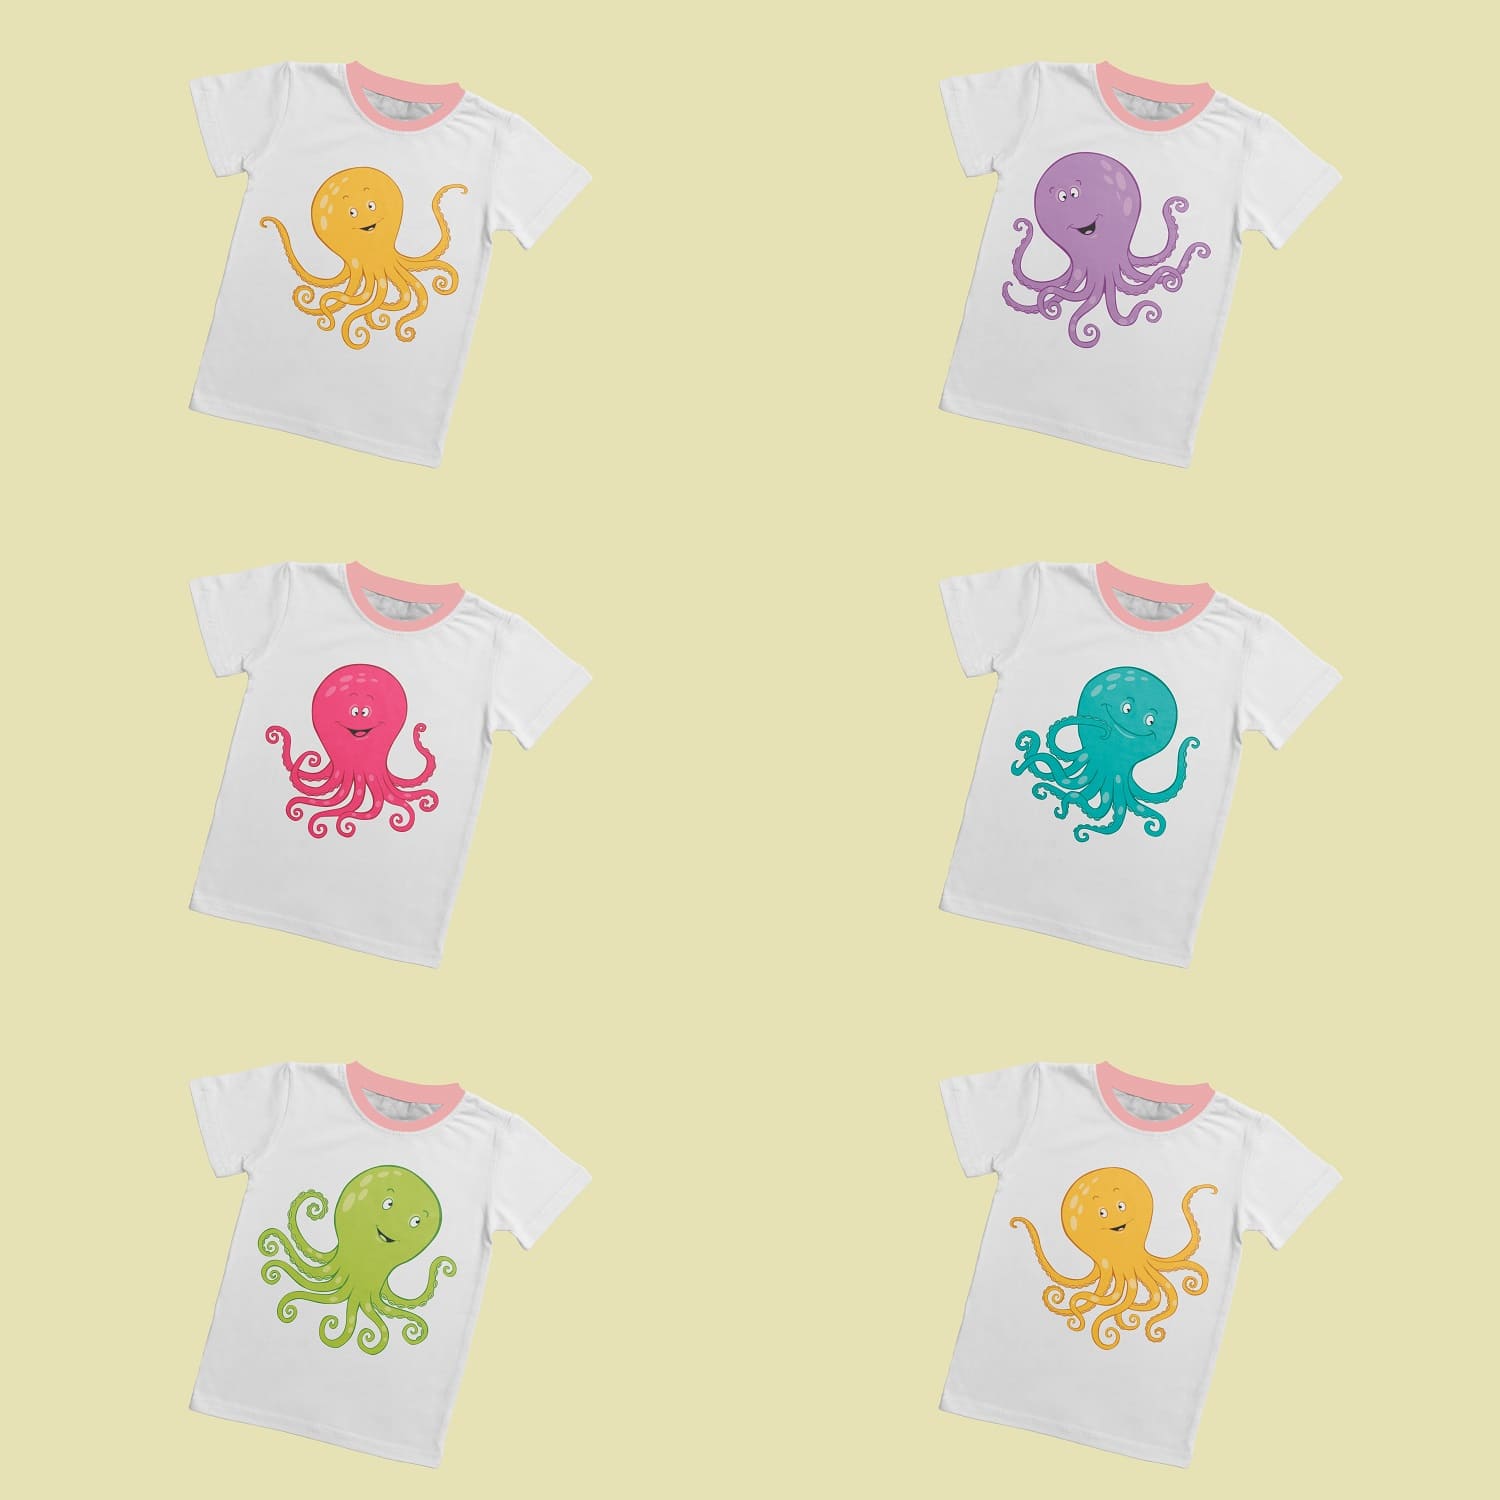 Six t-shirt designs featuring a cute octopus.